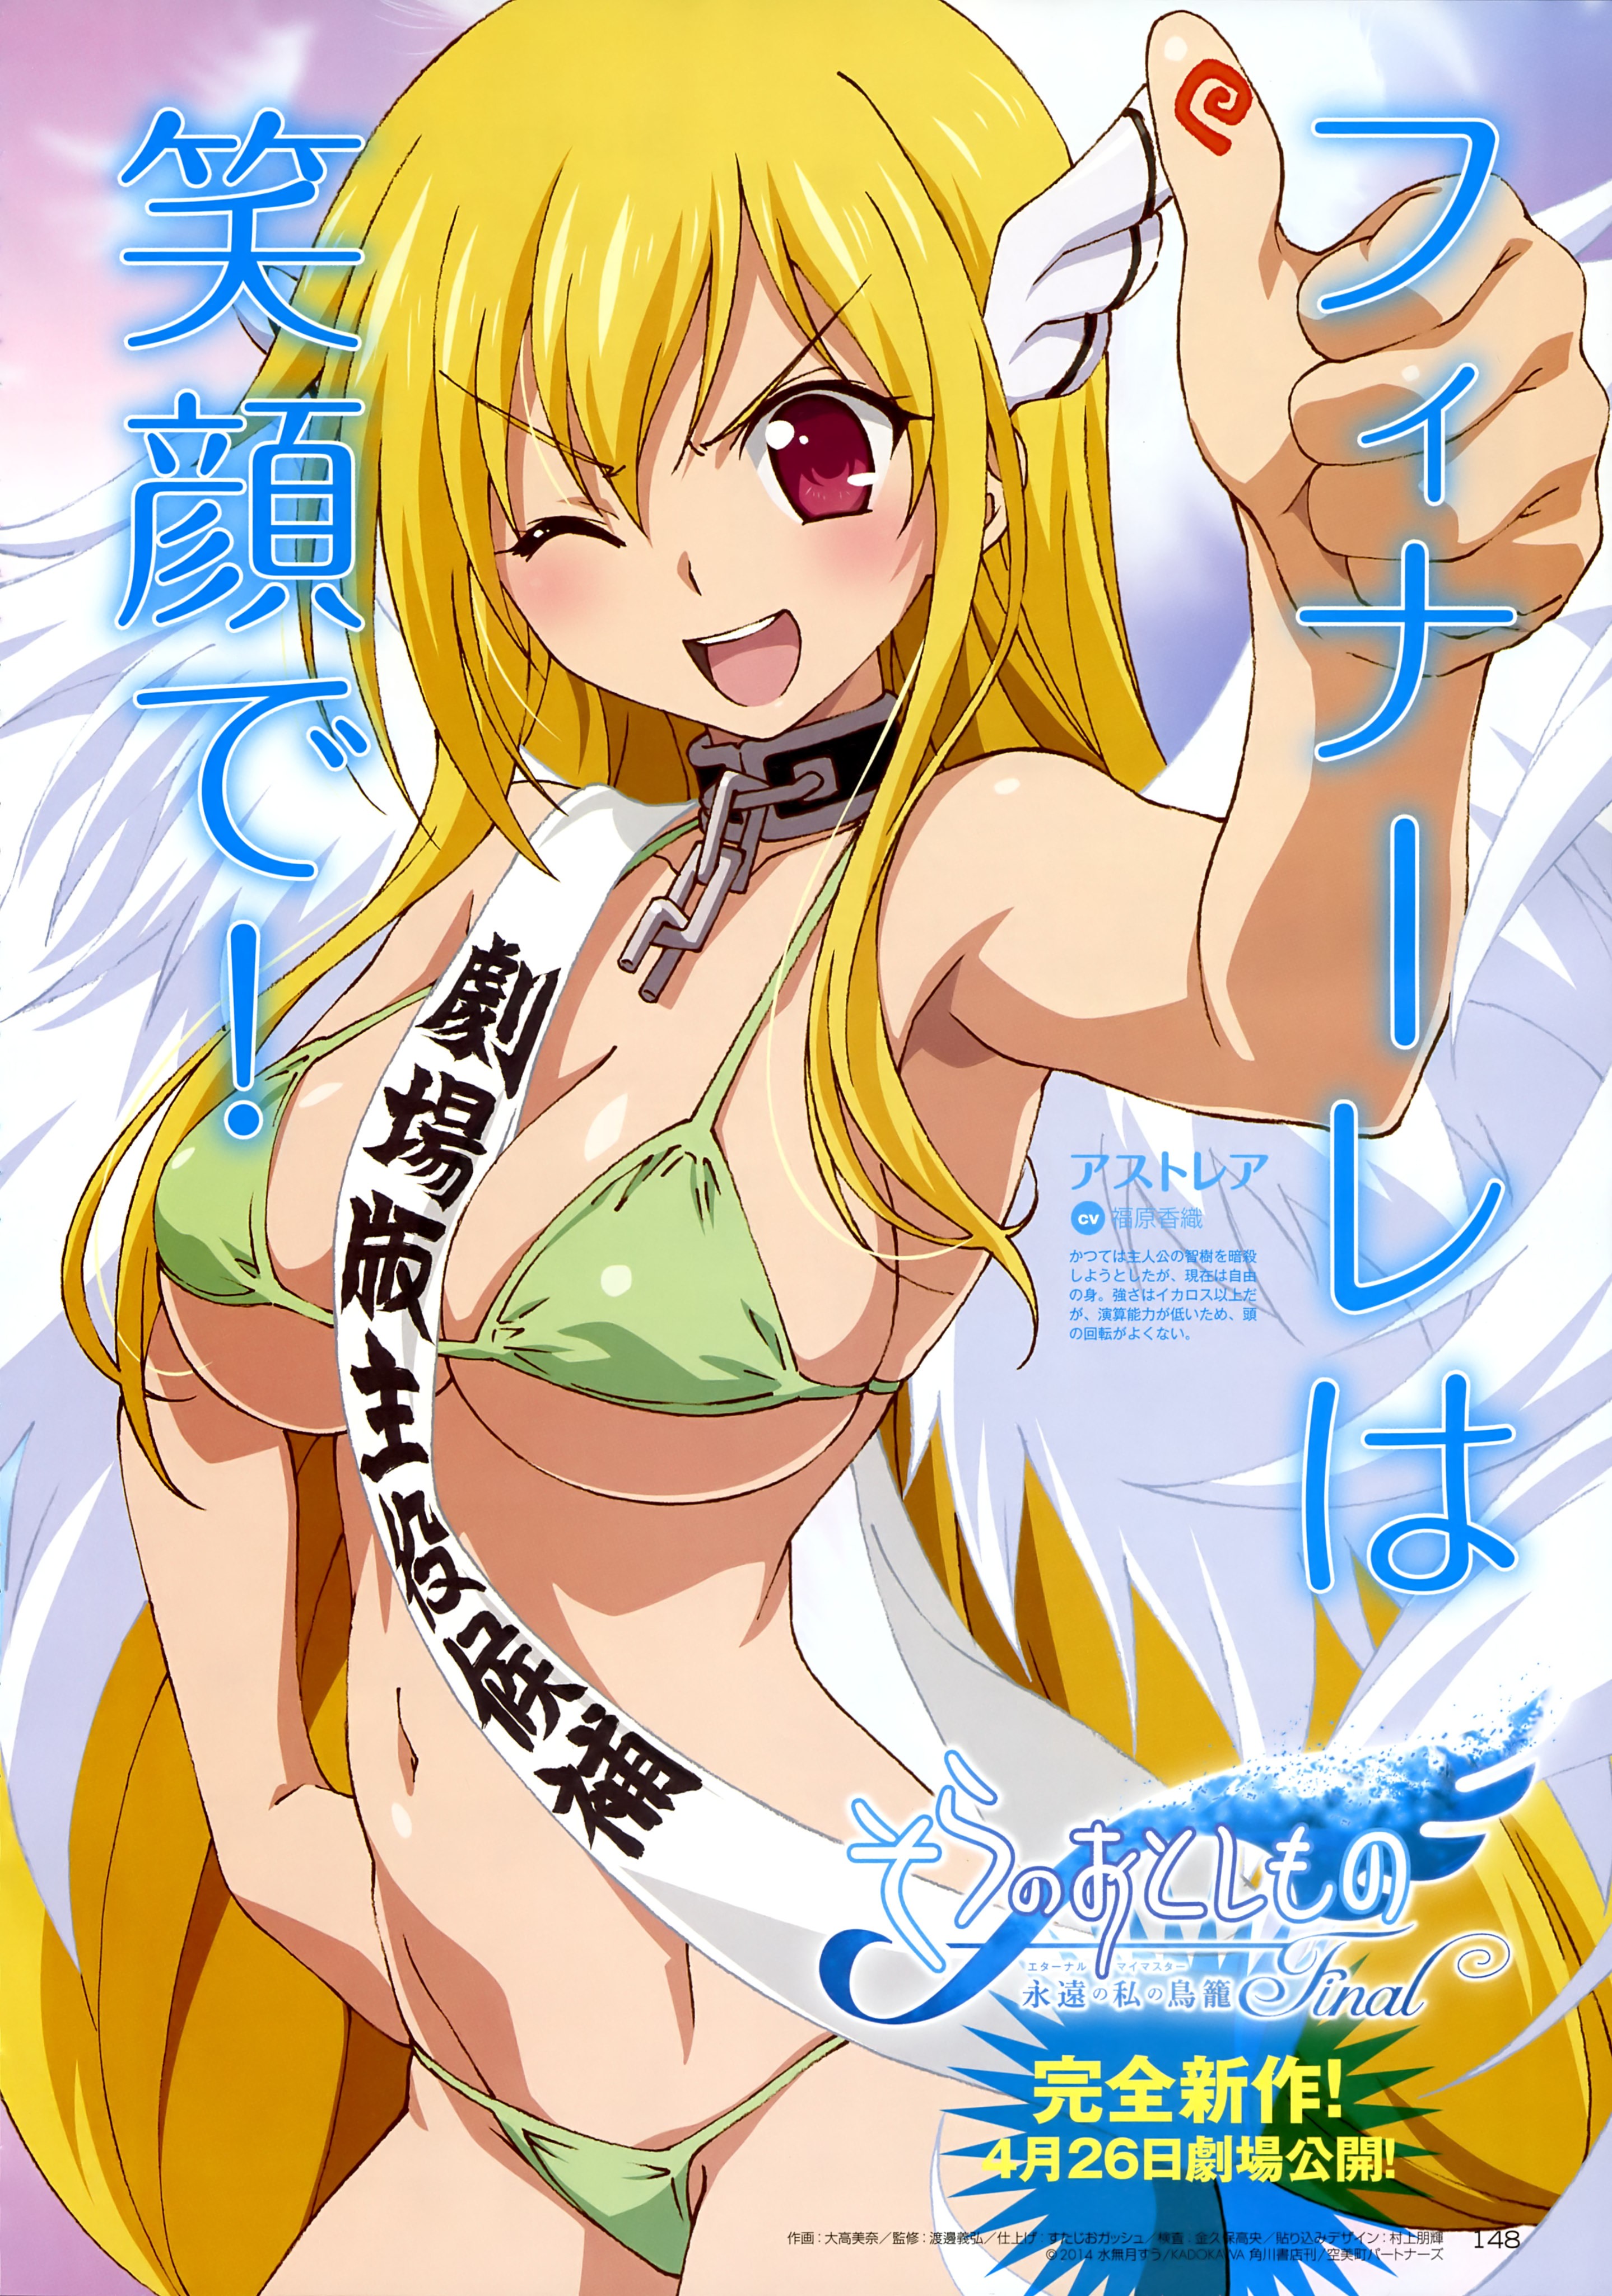 Sora No Otoshimono Anime Girls Astraea 2878x4100 Wallpaper Wallhaven Cc